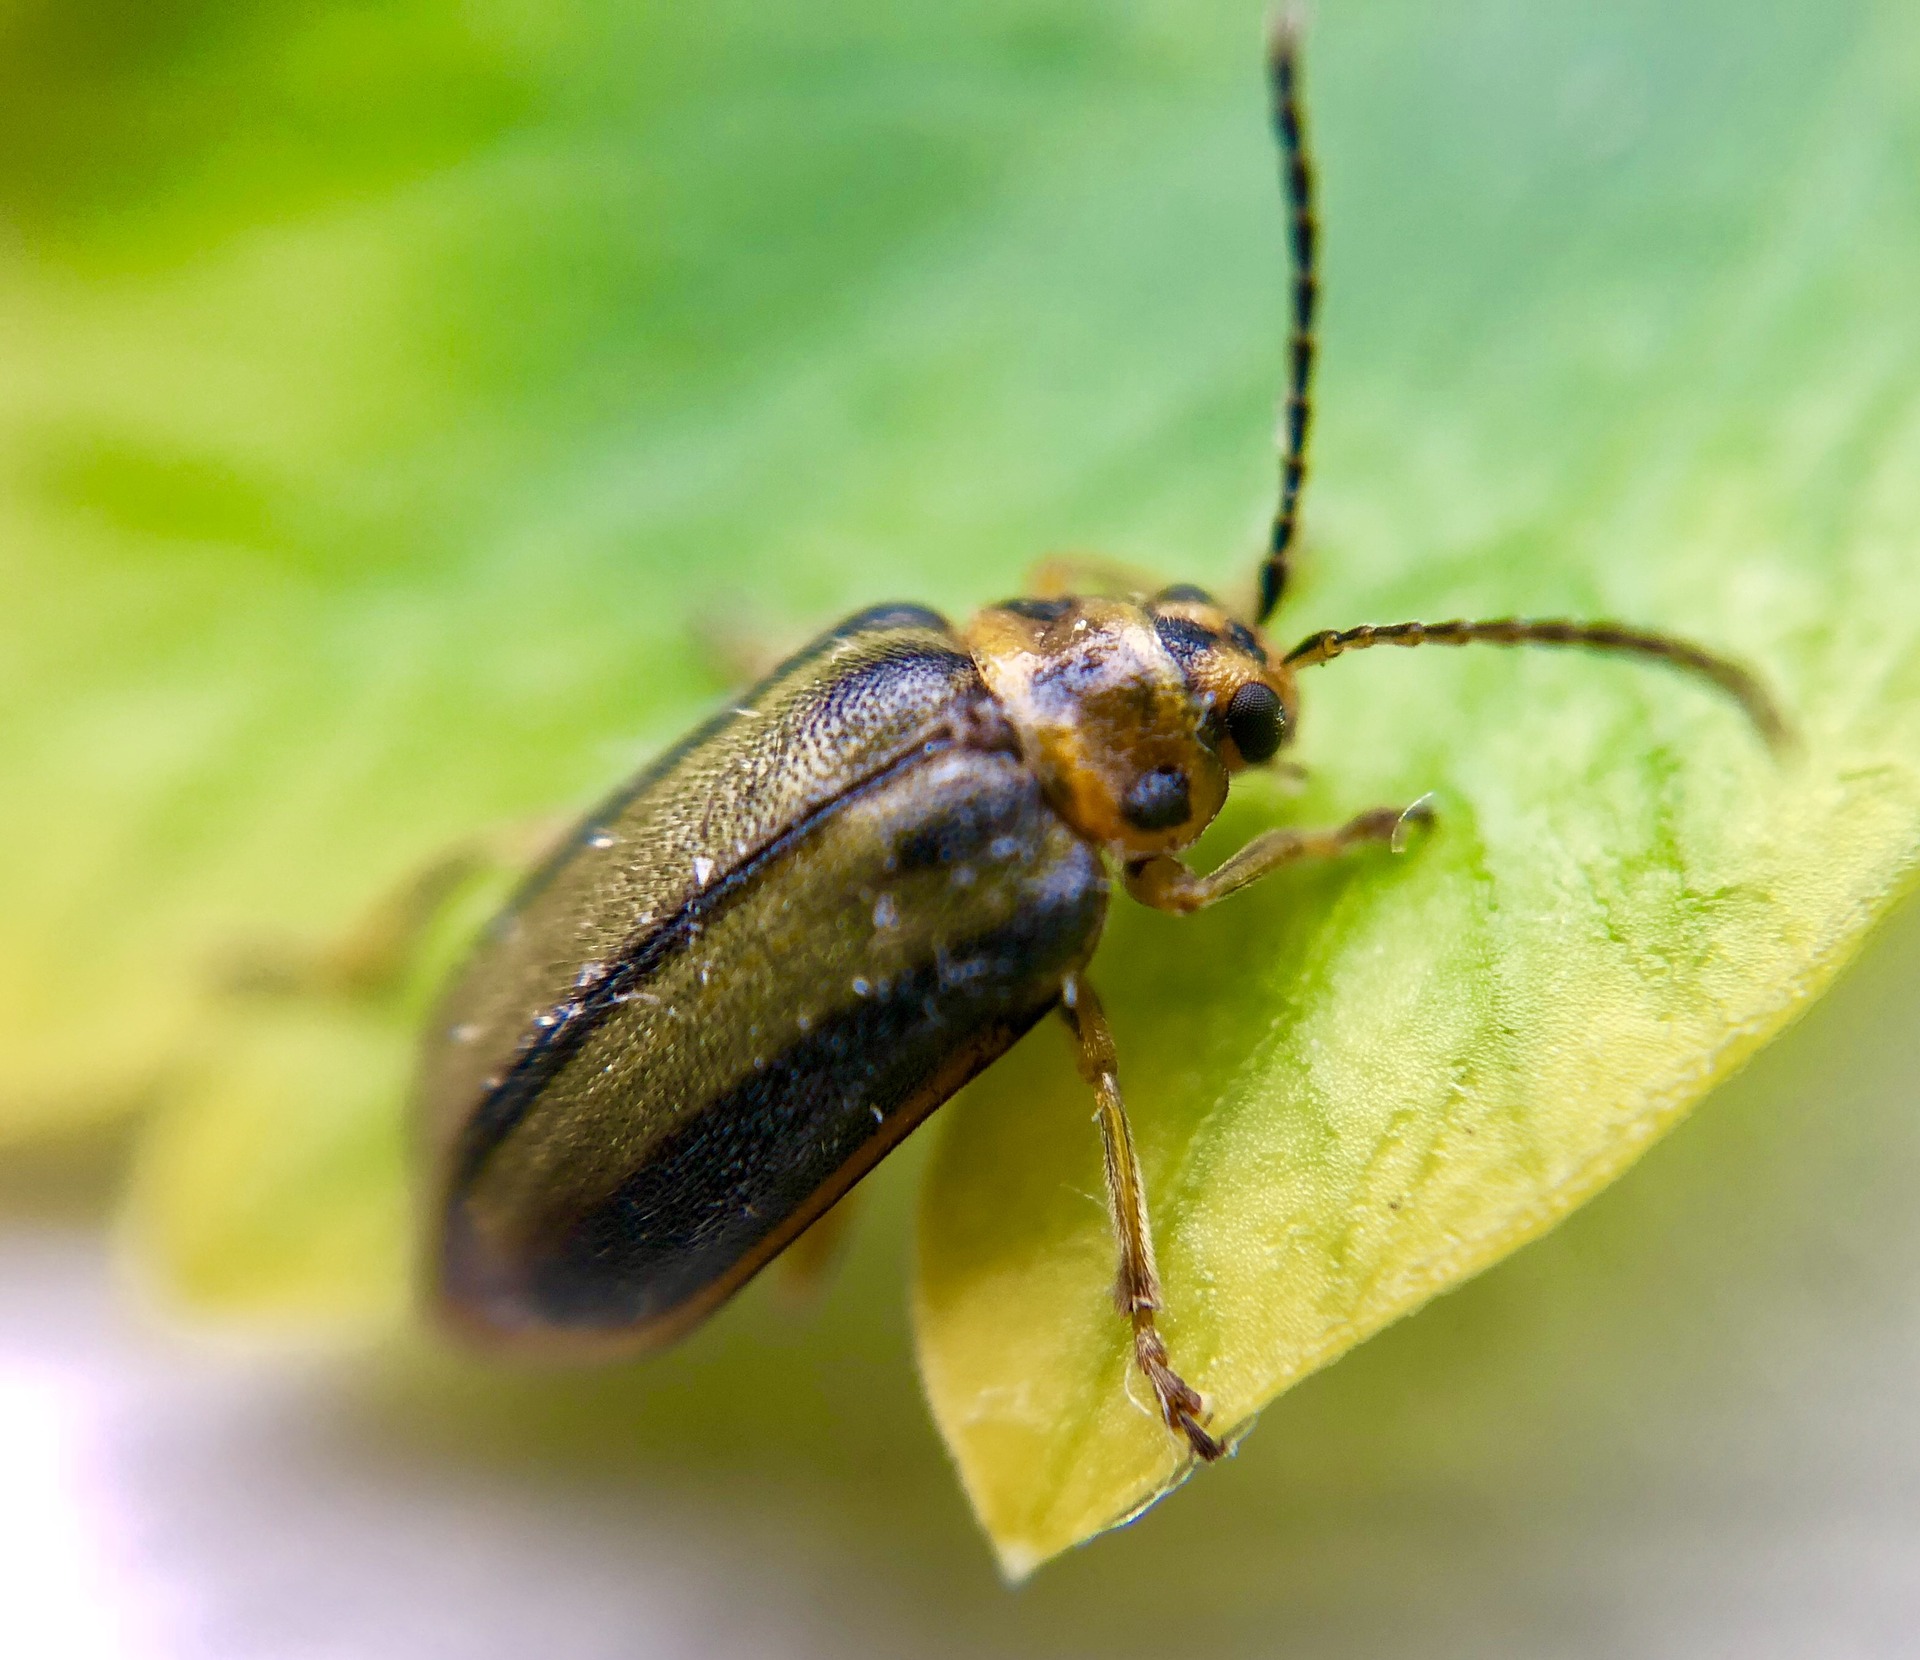 An elm leaf beetle on a leaf